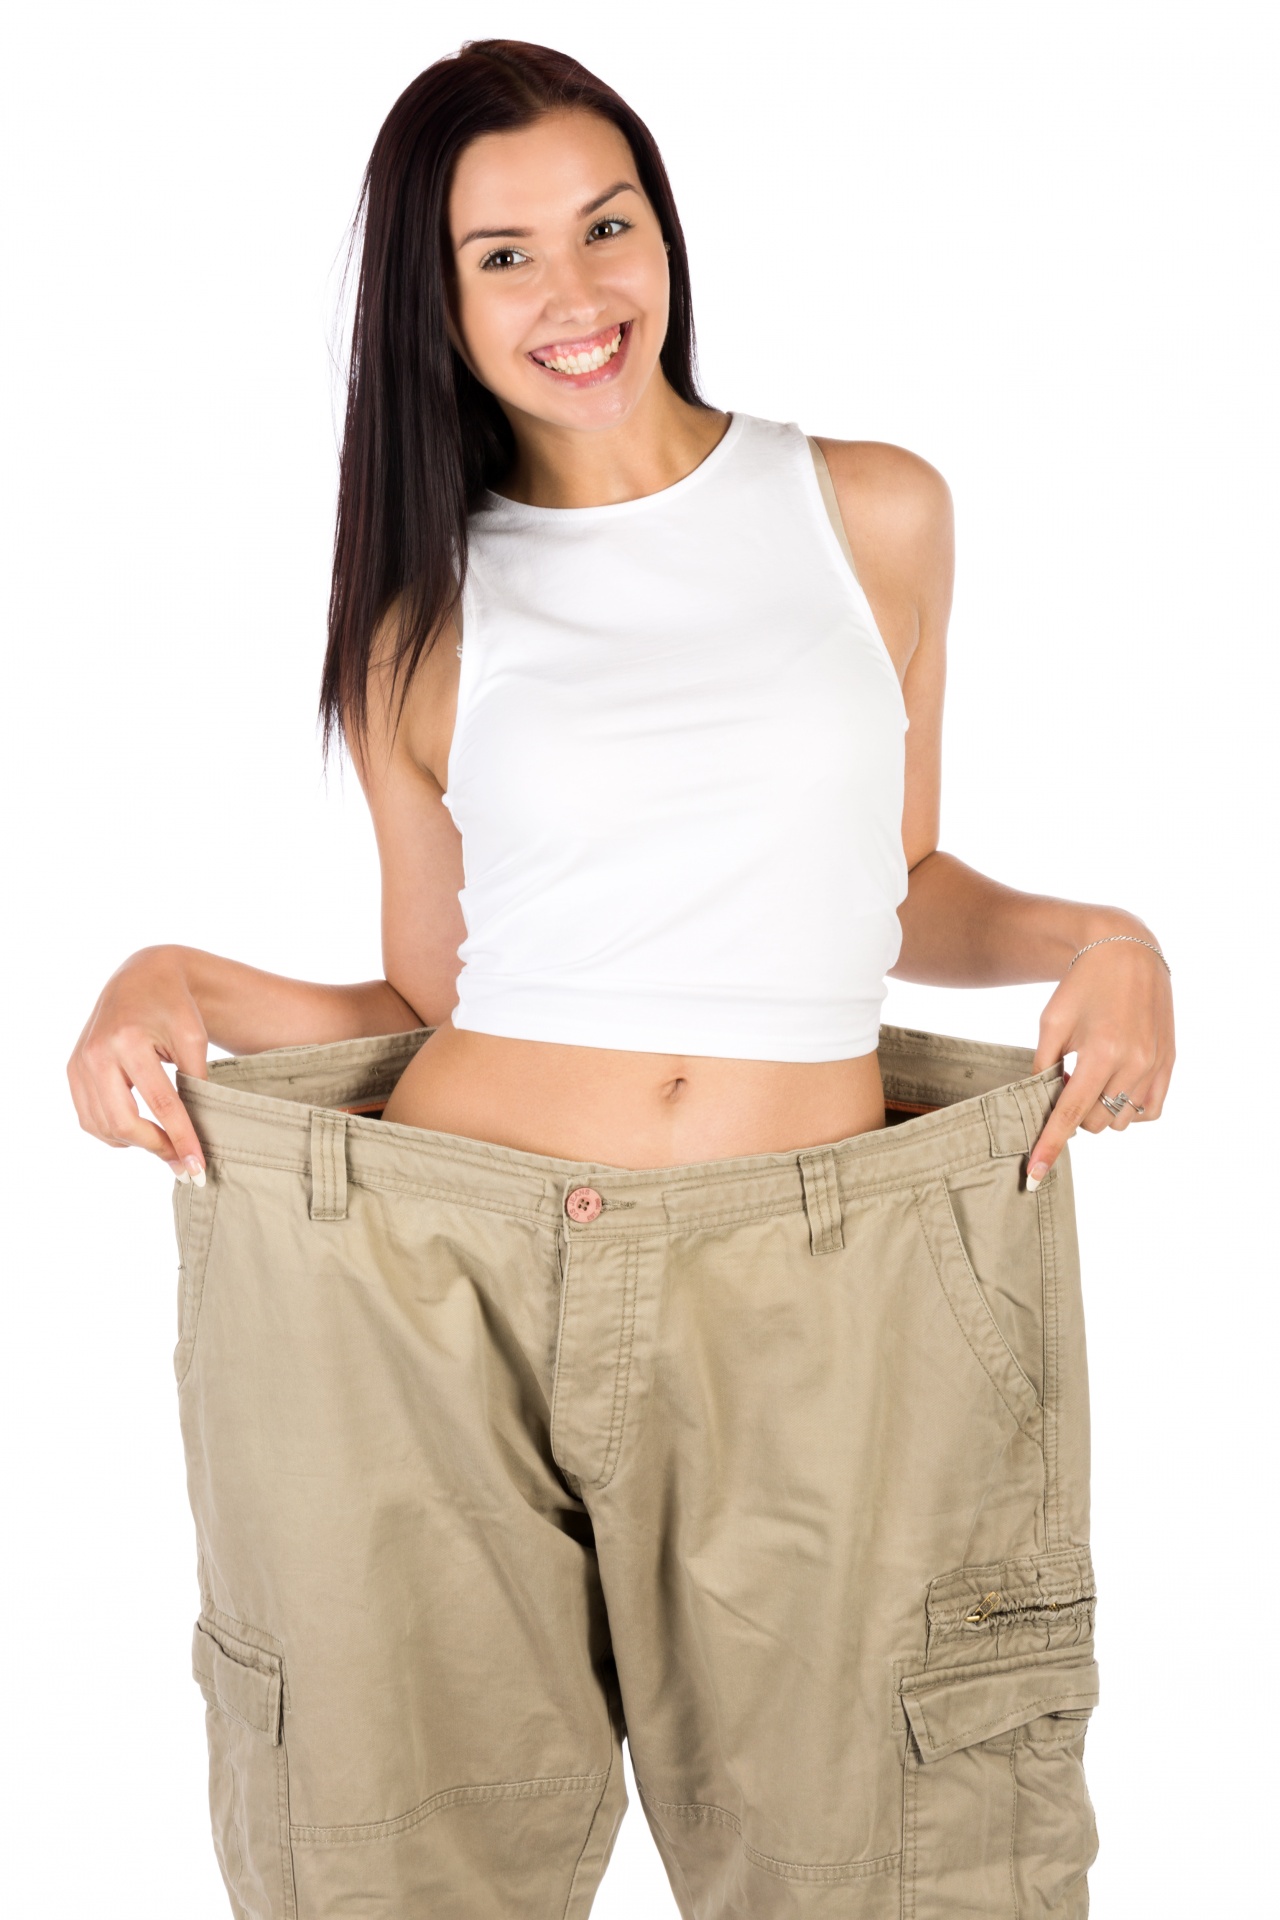 Nő a nadrág után diéta